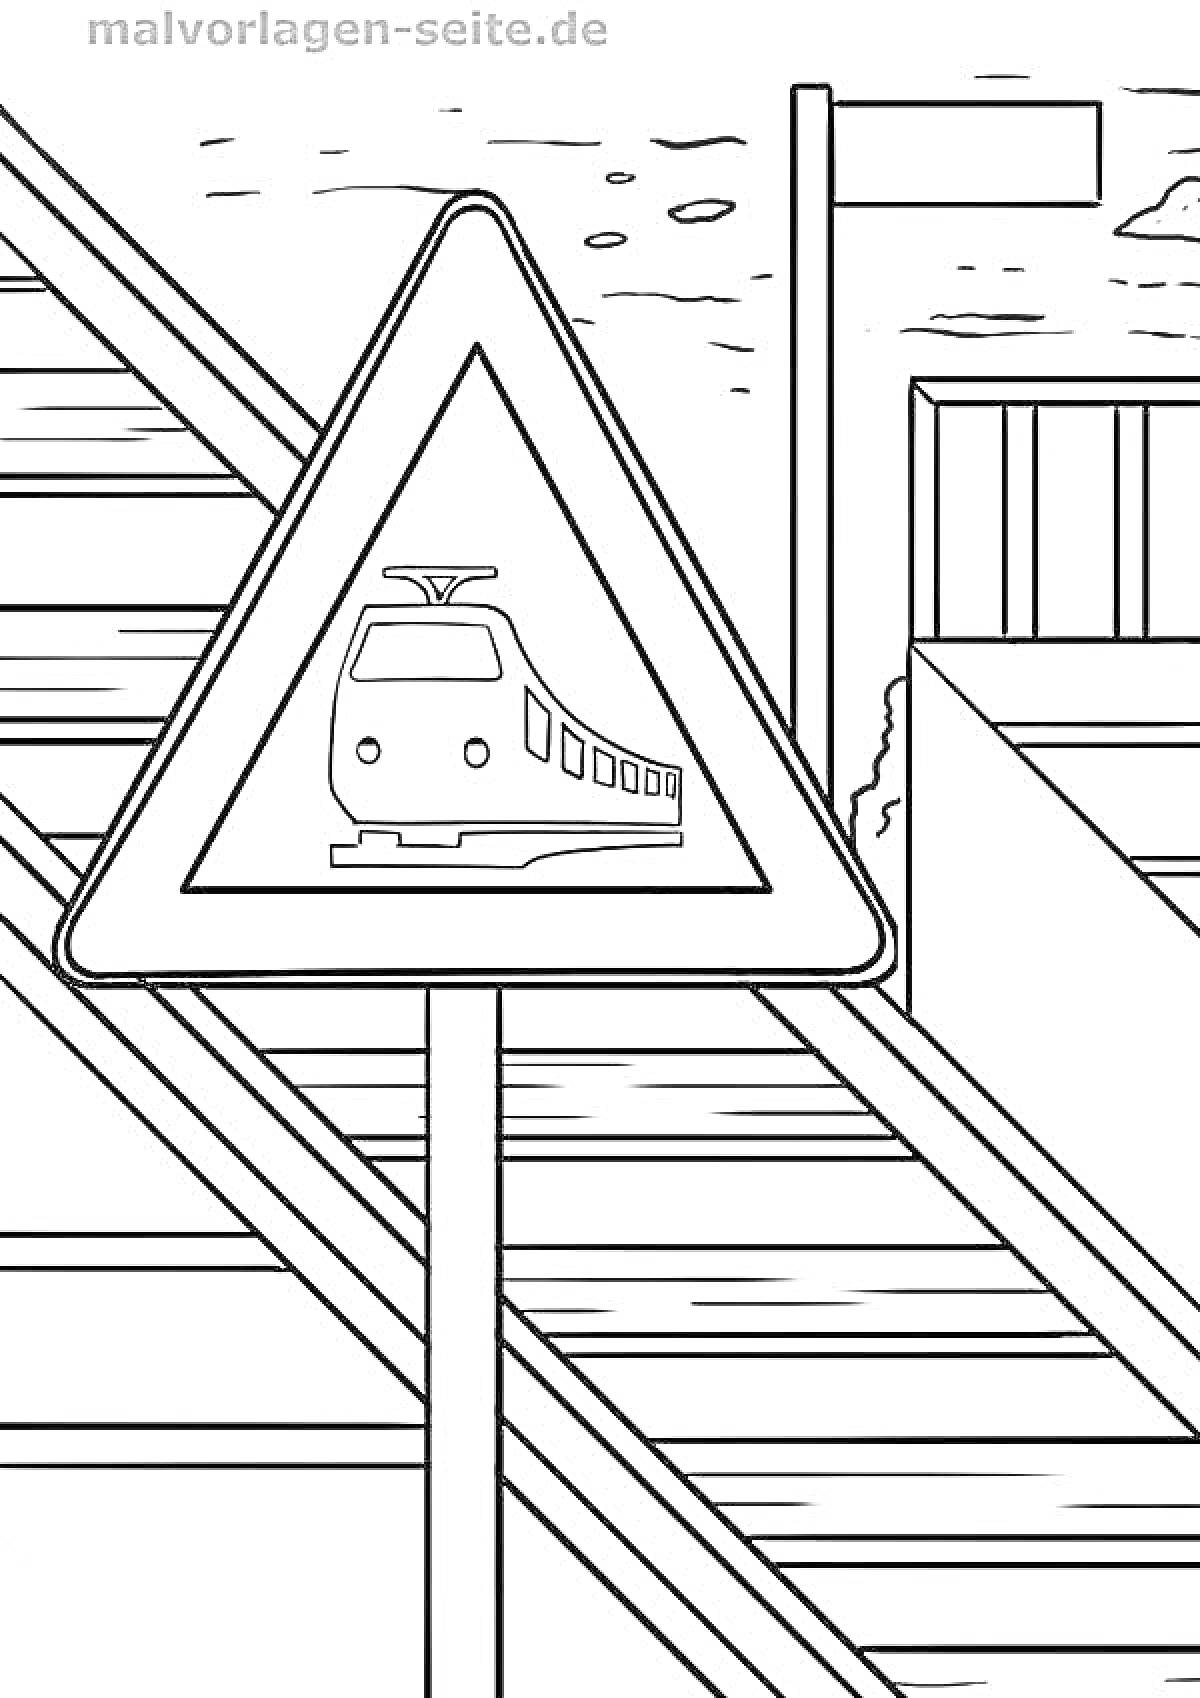 Раскраска Железнодорожный переезд с предупреждающим знаком и барьером на фоне